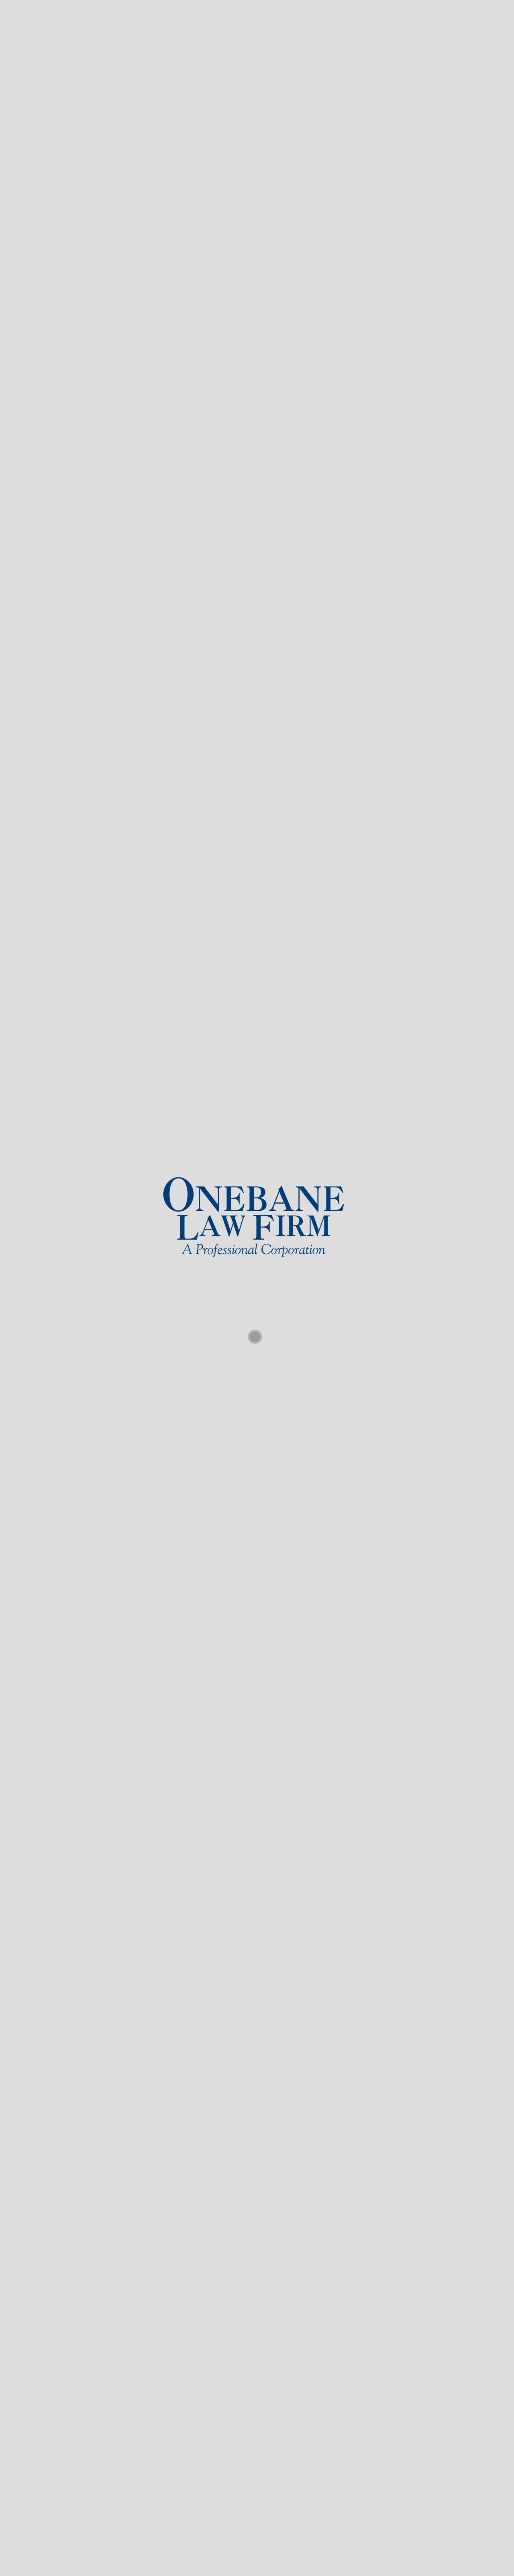 Onebane Law Firm - Lafayette LA Lawyers